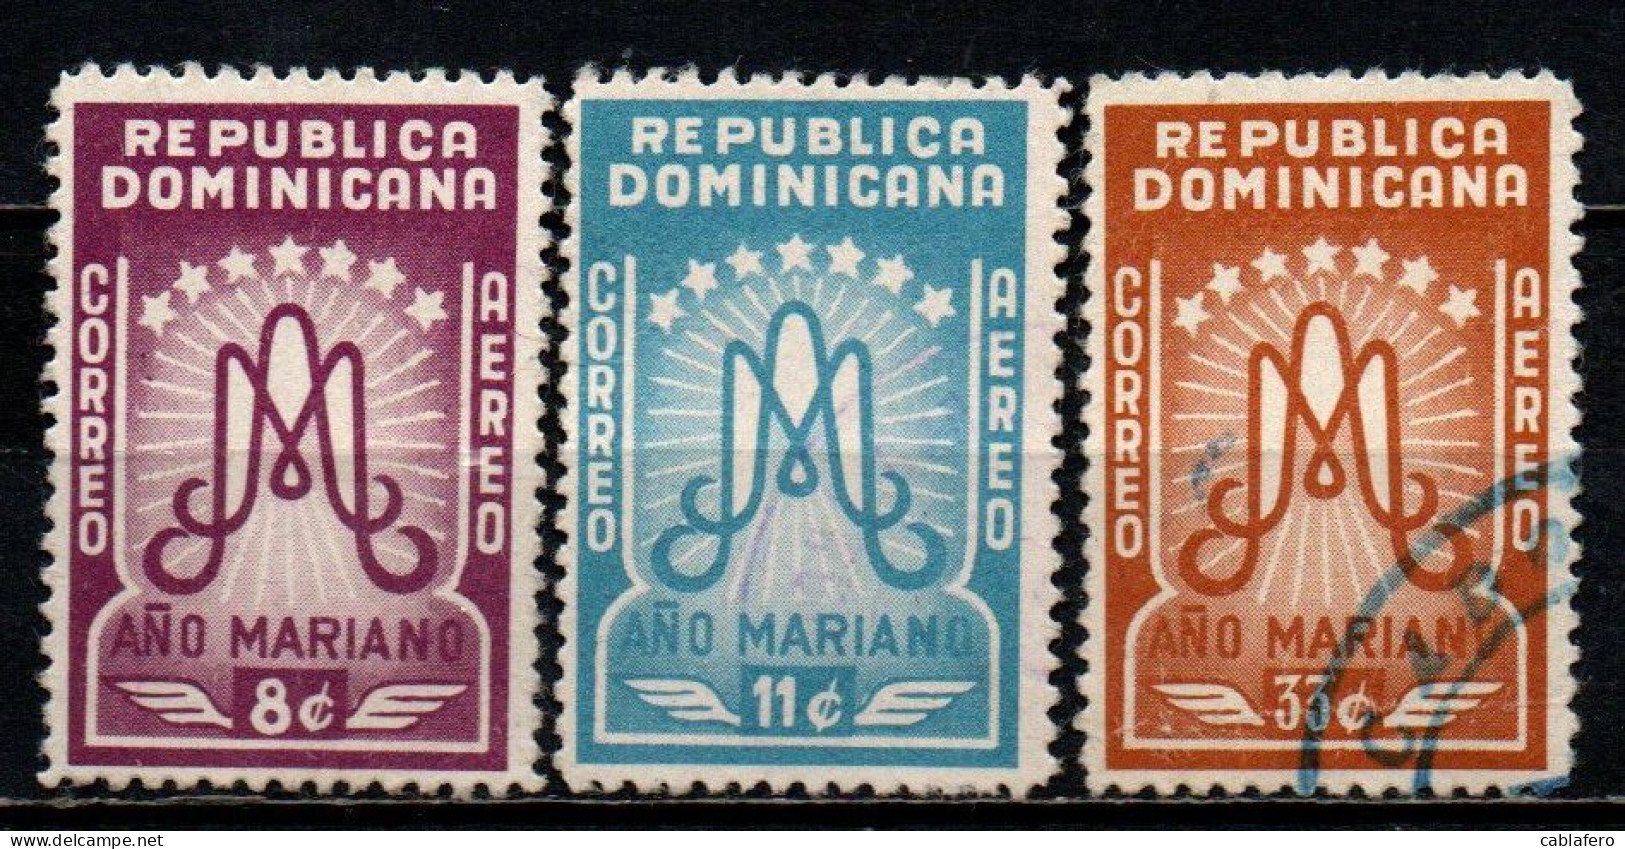 REPUBBLICA DOMENICANA - 1954 - ANNO MARIANO - USATI - Repubblica Domenicana